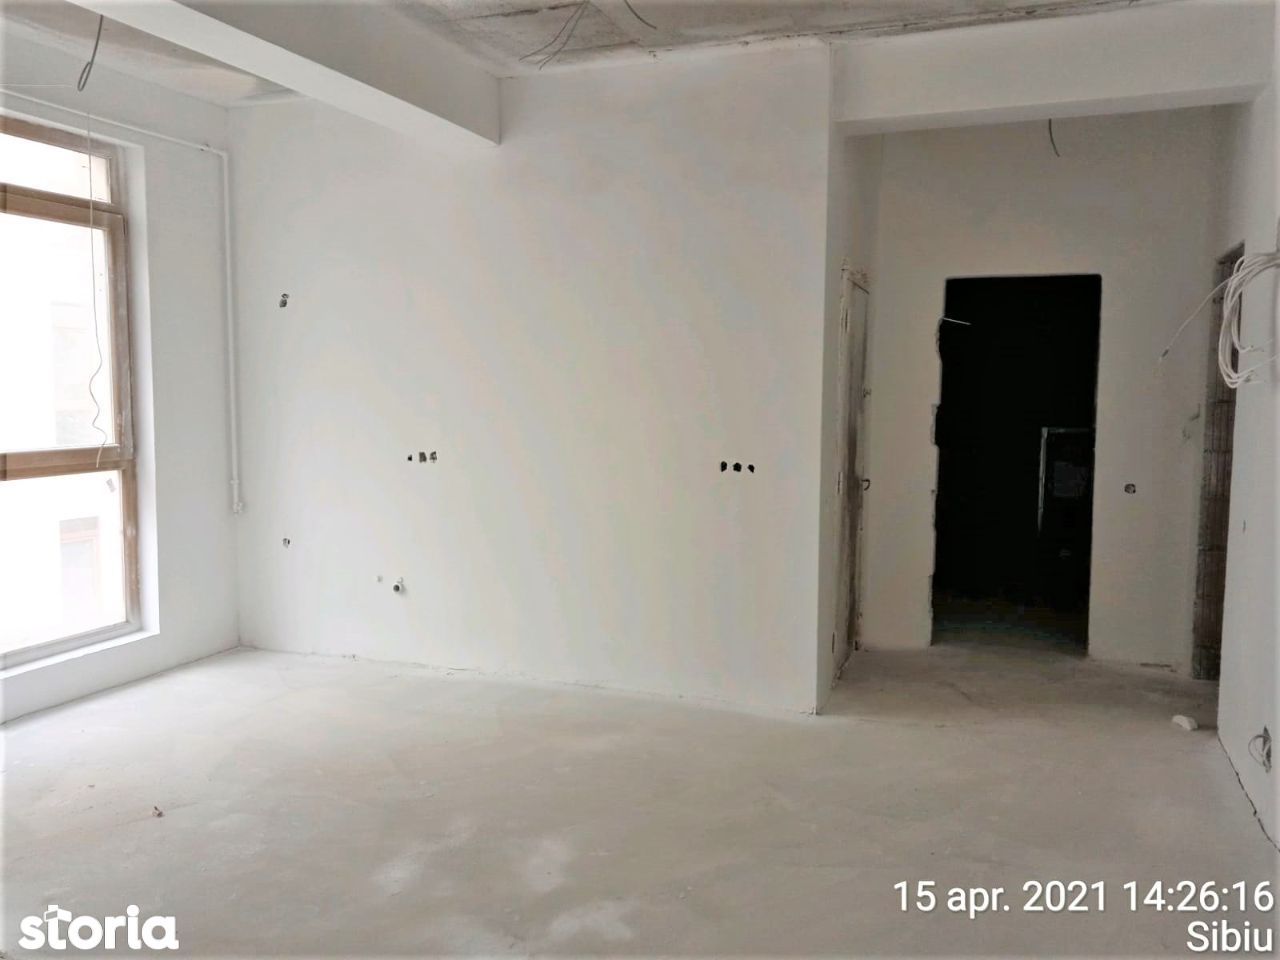 59 999 euro Vand apartament 2 camere insorit pe etajul 2 Milea Oncesti